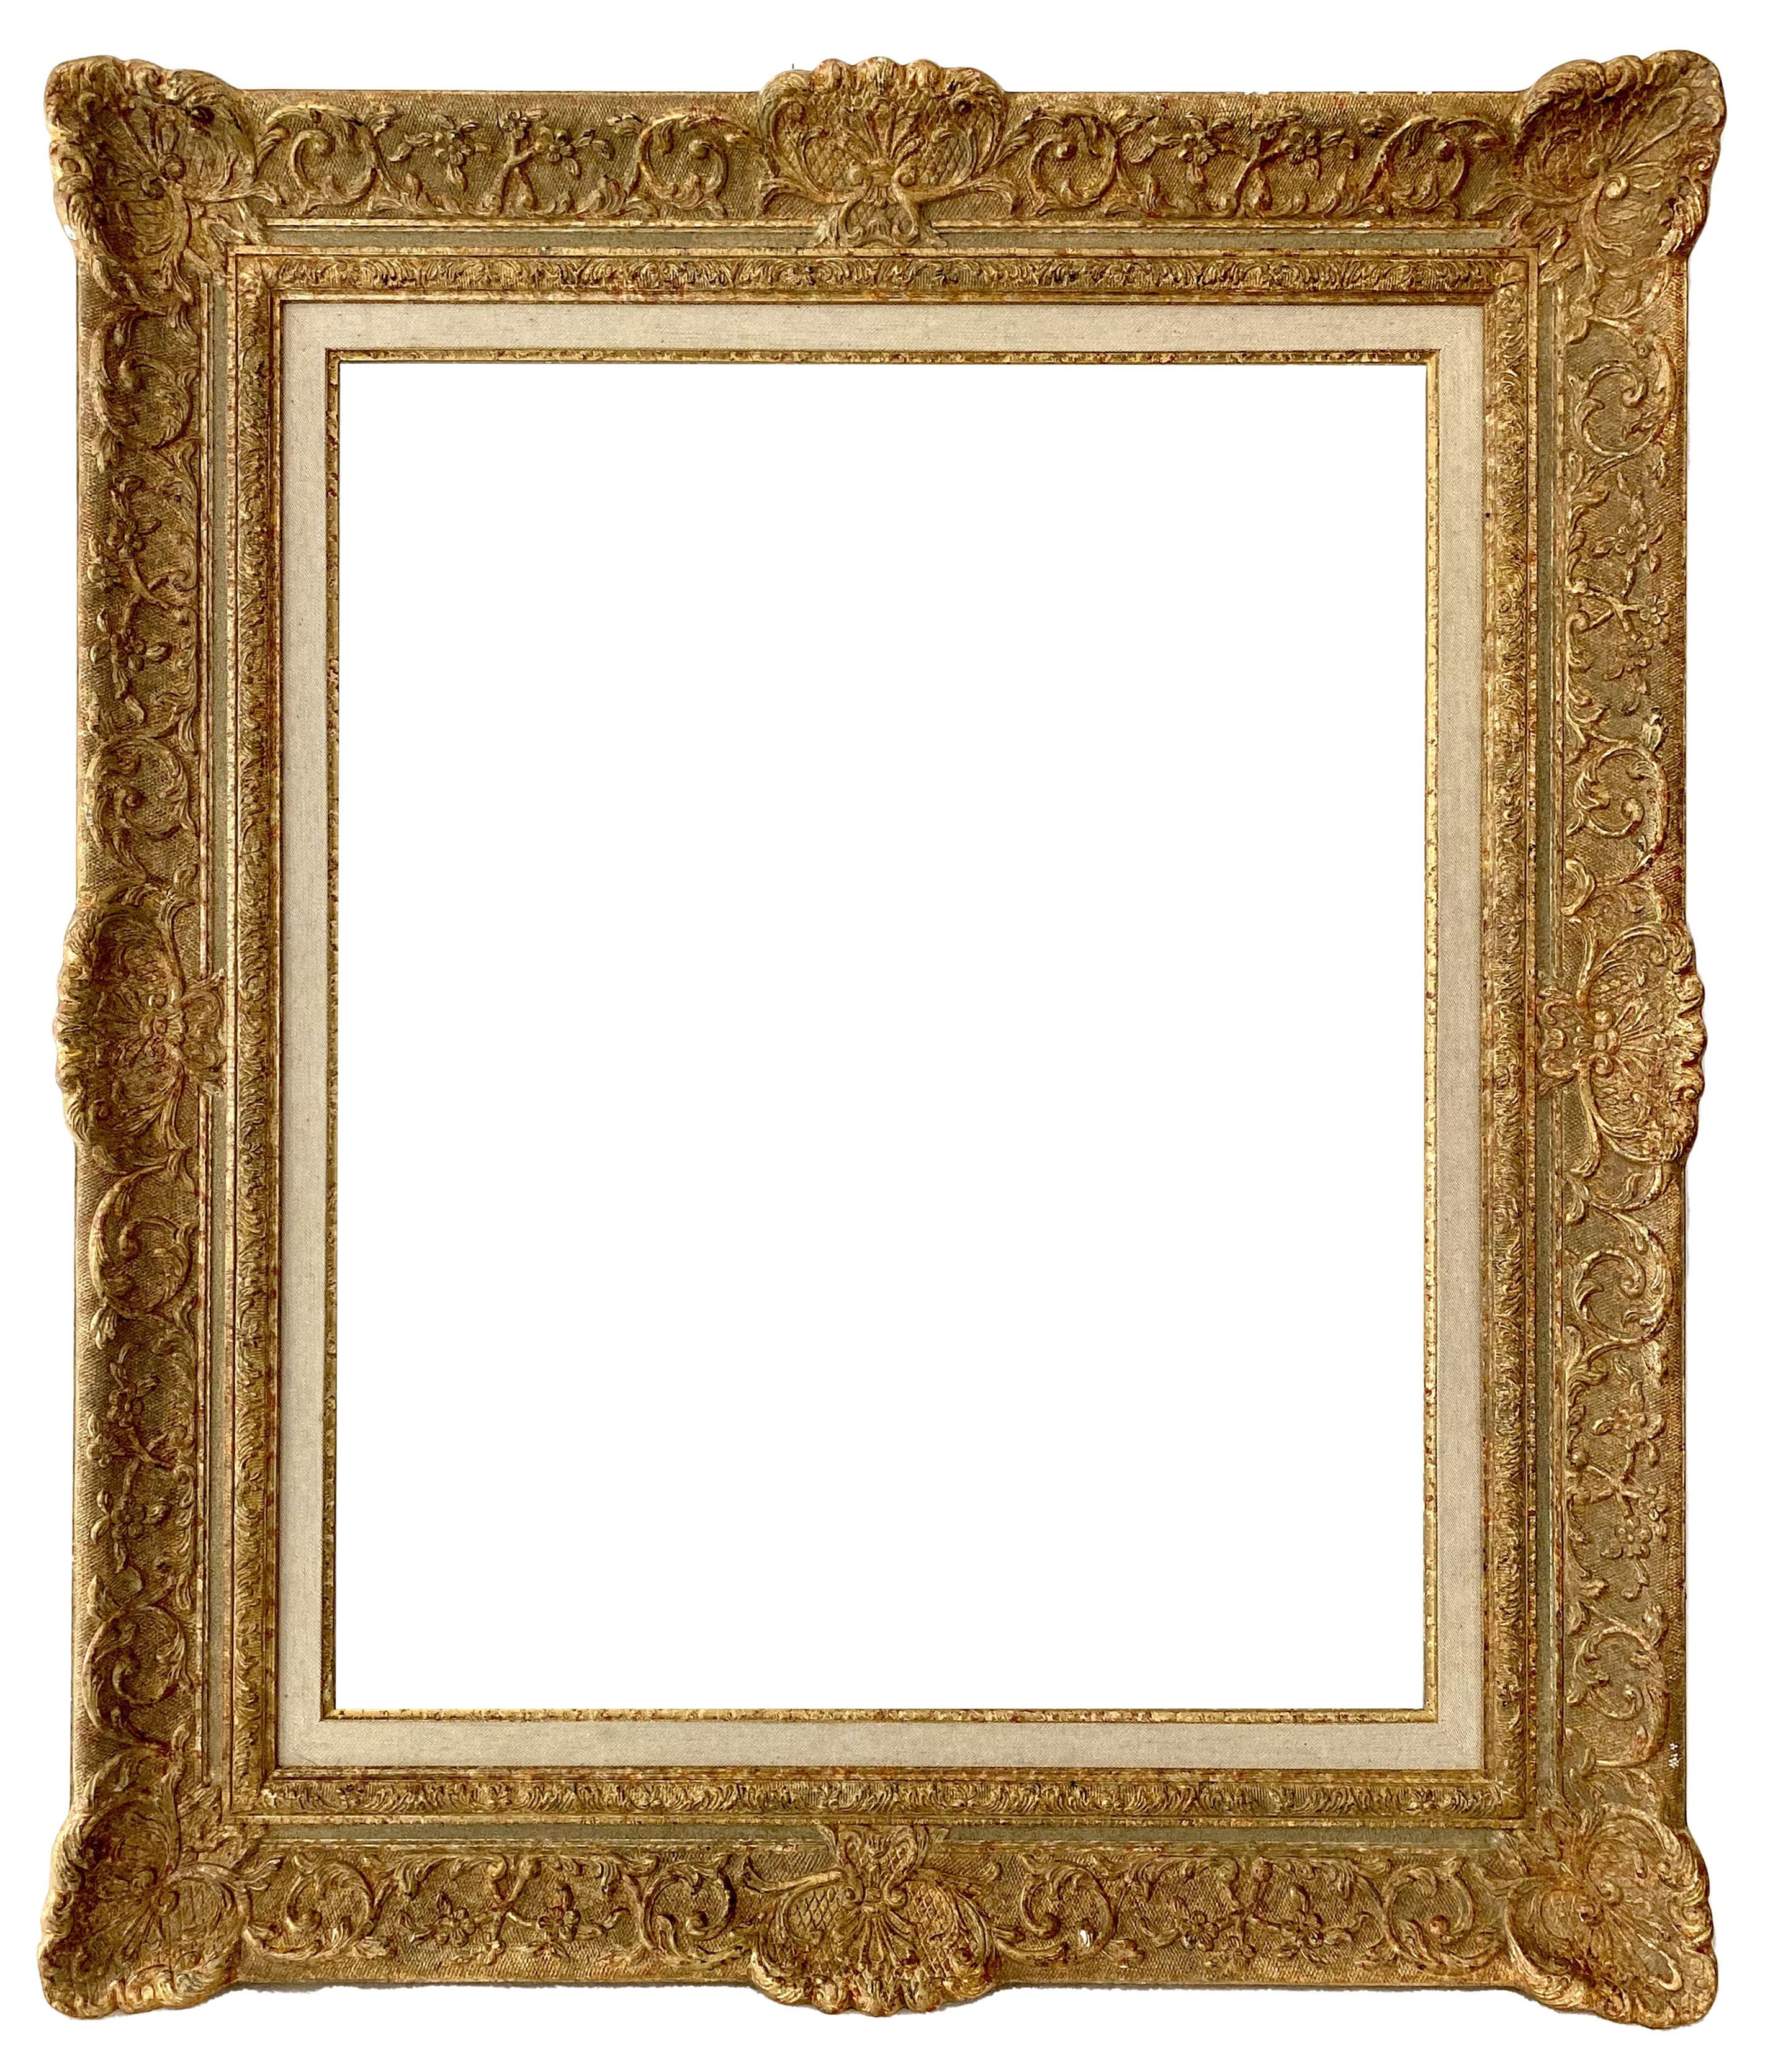 Cadre de style Louis XIV - 65,60 x 54,60 - REF - 1510